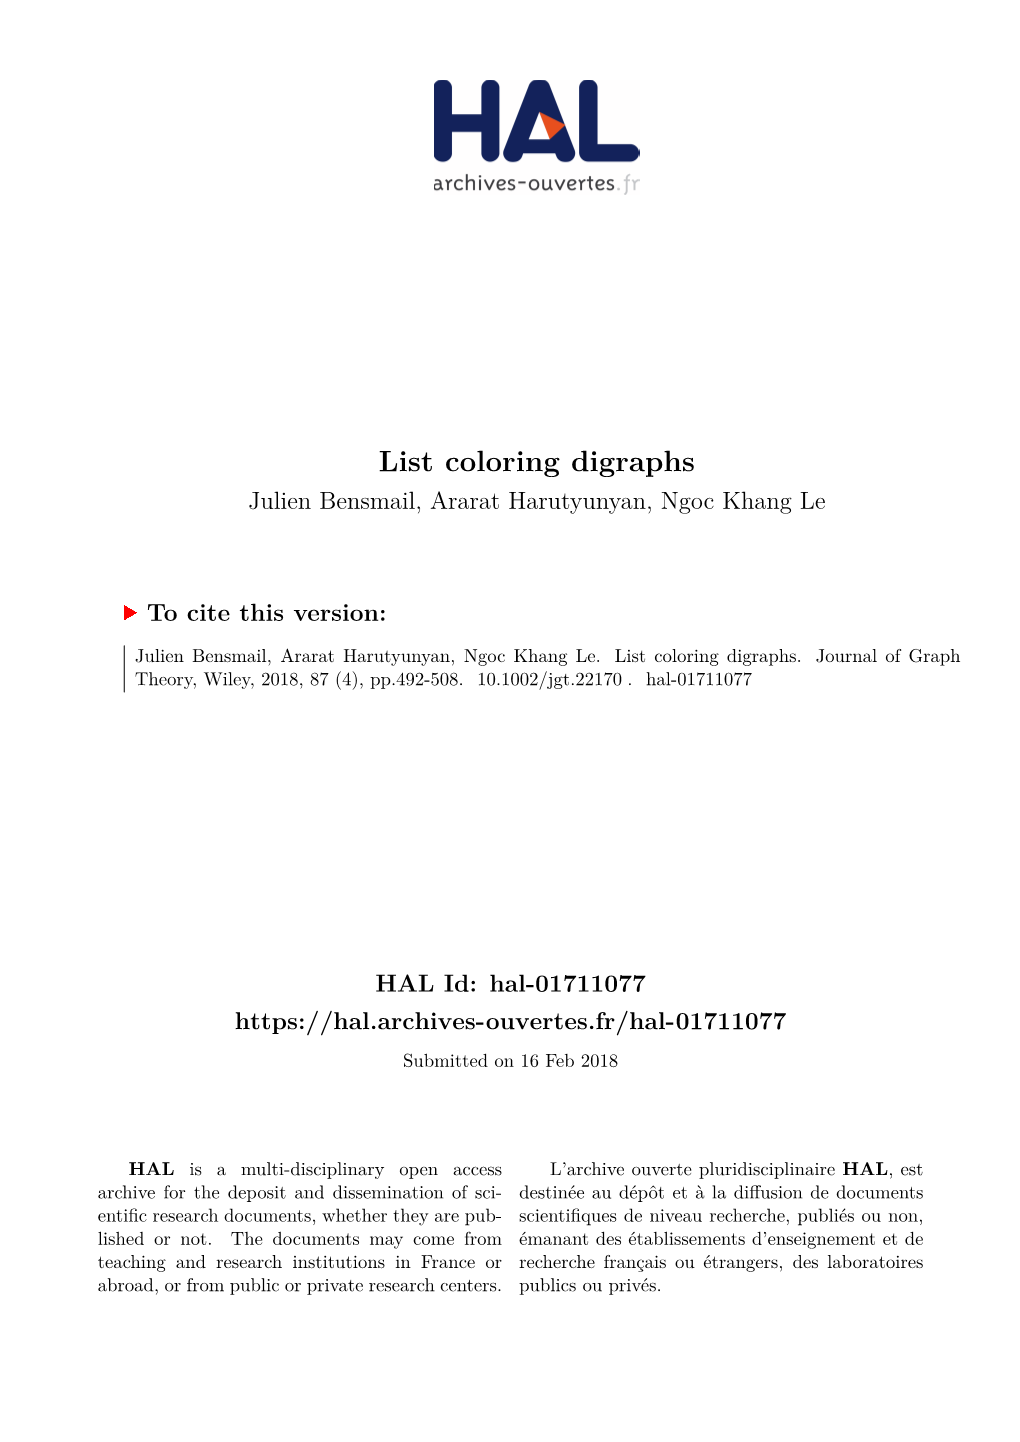 List Coloring Digraphs Julien Bensmail, Ararat Harutyunyan, Ngoc Khang Le